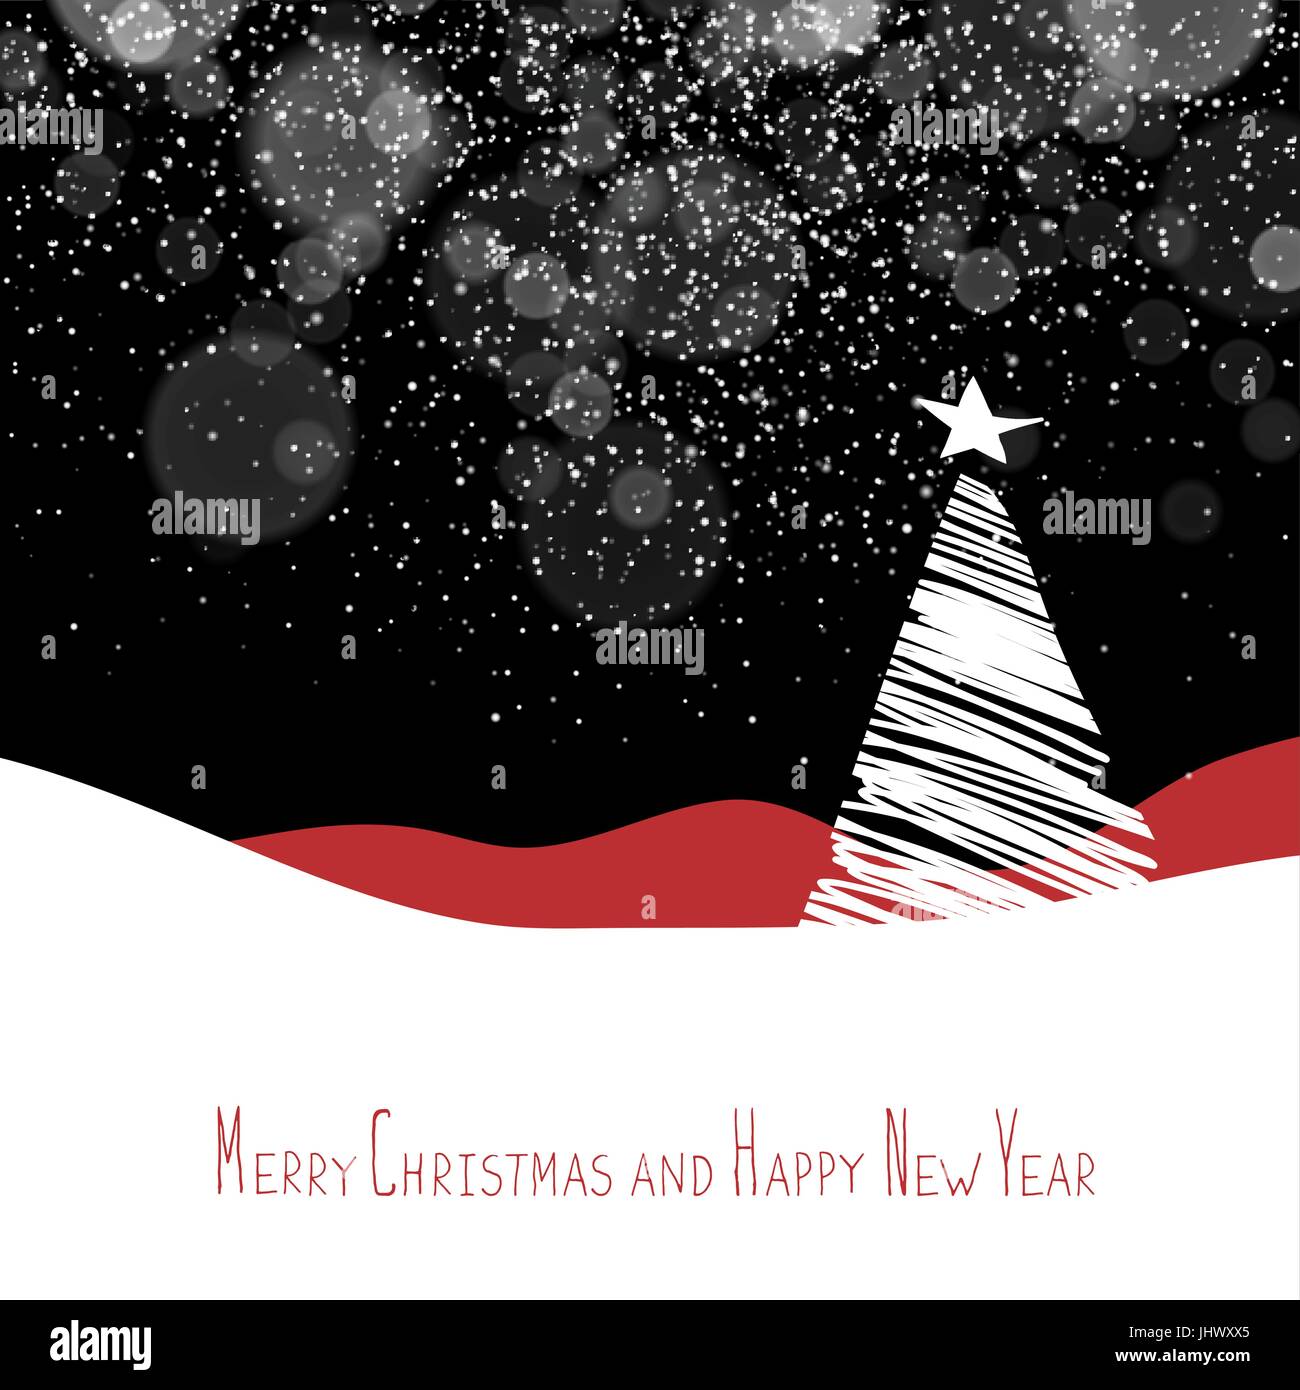 Frohe Weihnachten und Happy New Year Postkarte. Weihnachtsbaum. Xmas-Postkarte-Vorlage. Vektor-Hintergrund mit weißen Baum Silhouetten unter Schneefall. Stock Vektor